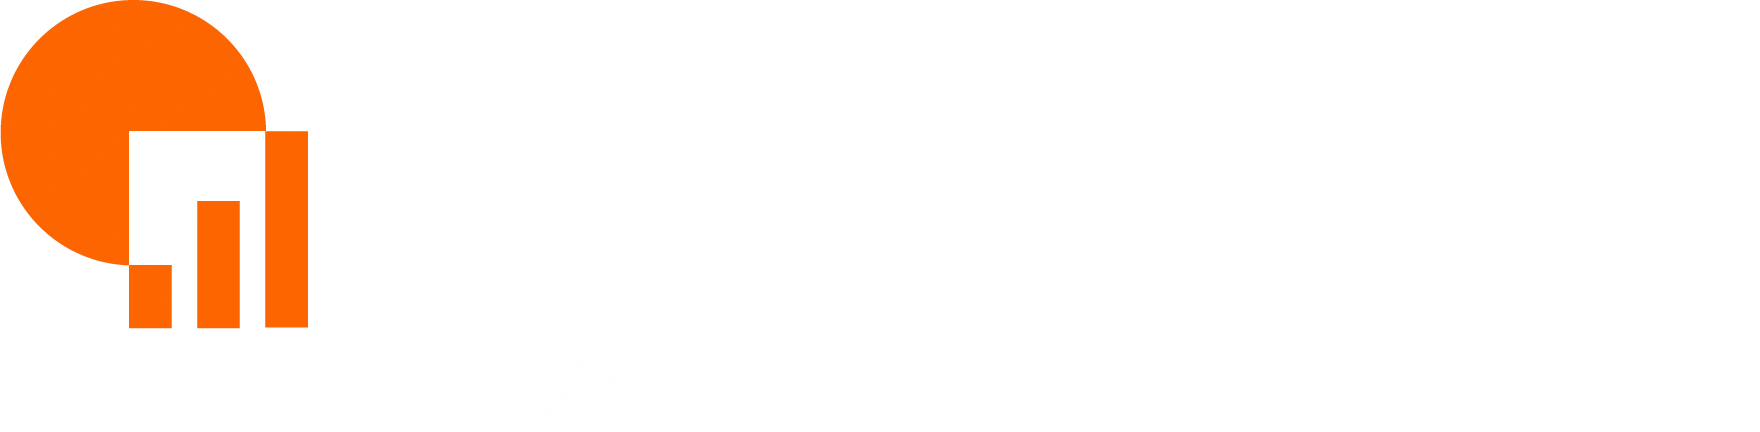 Ajantase_logo